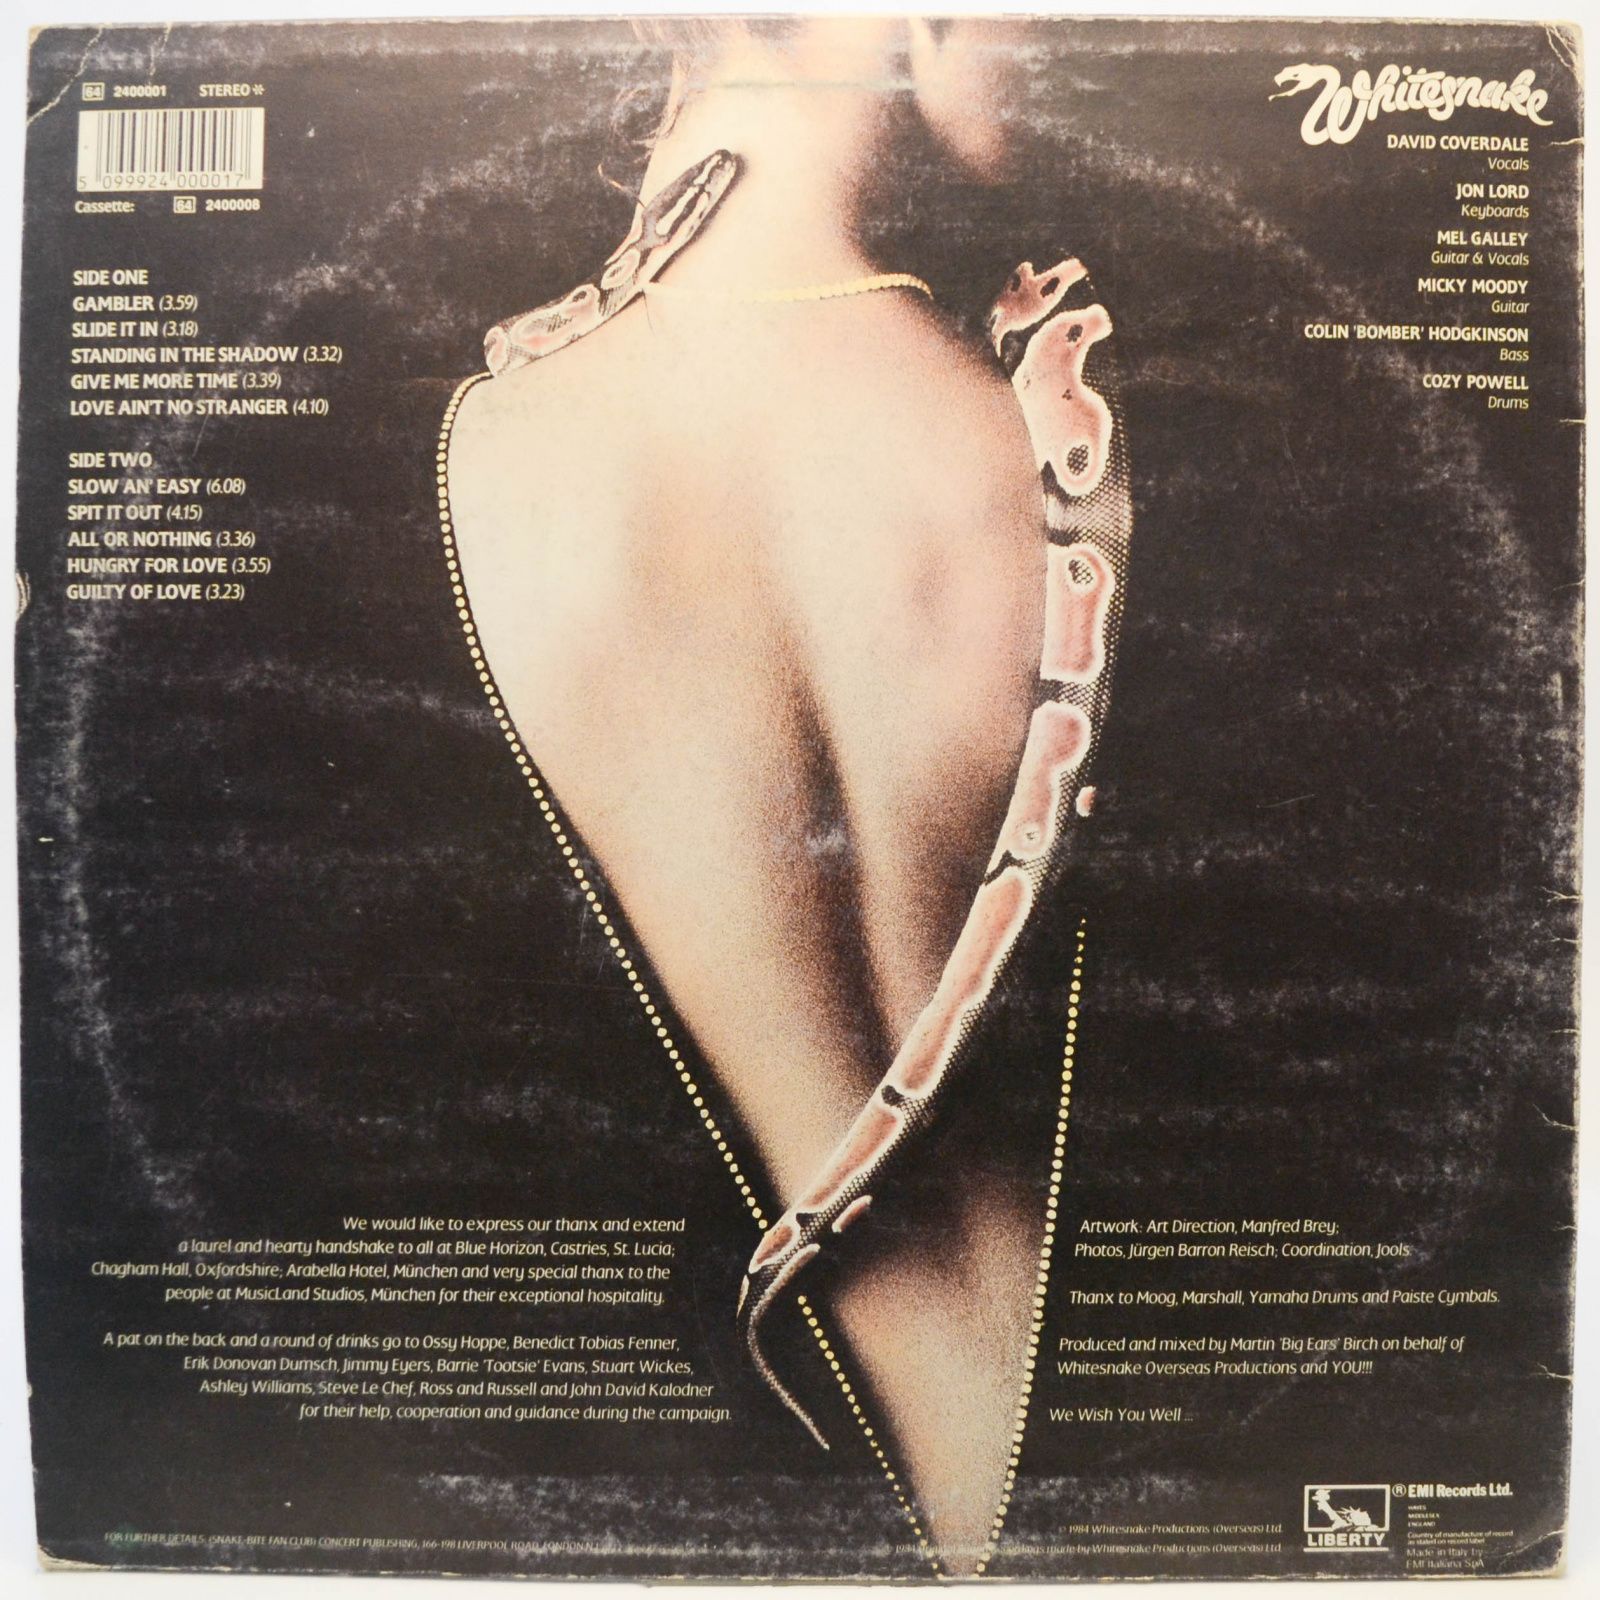 Whitesnake — Slide It In, 1984